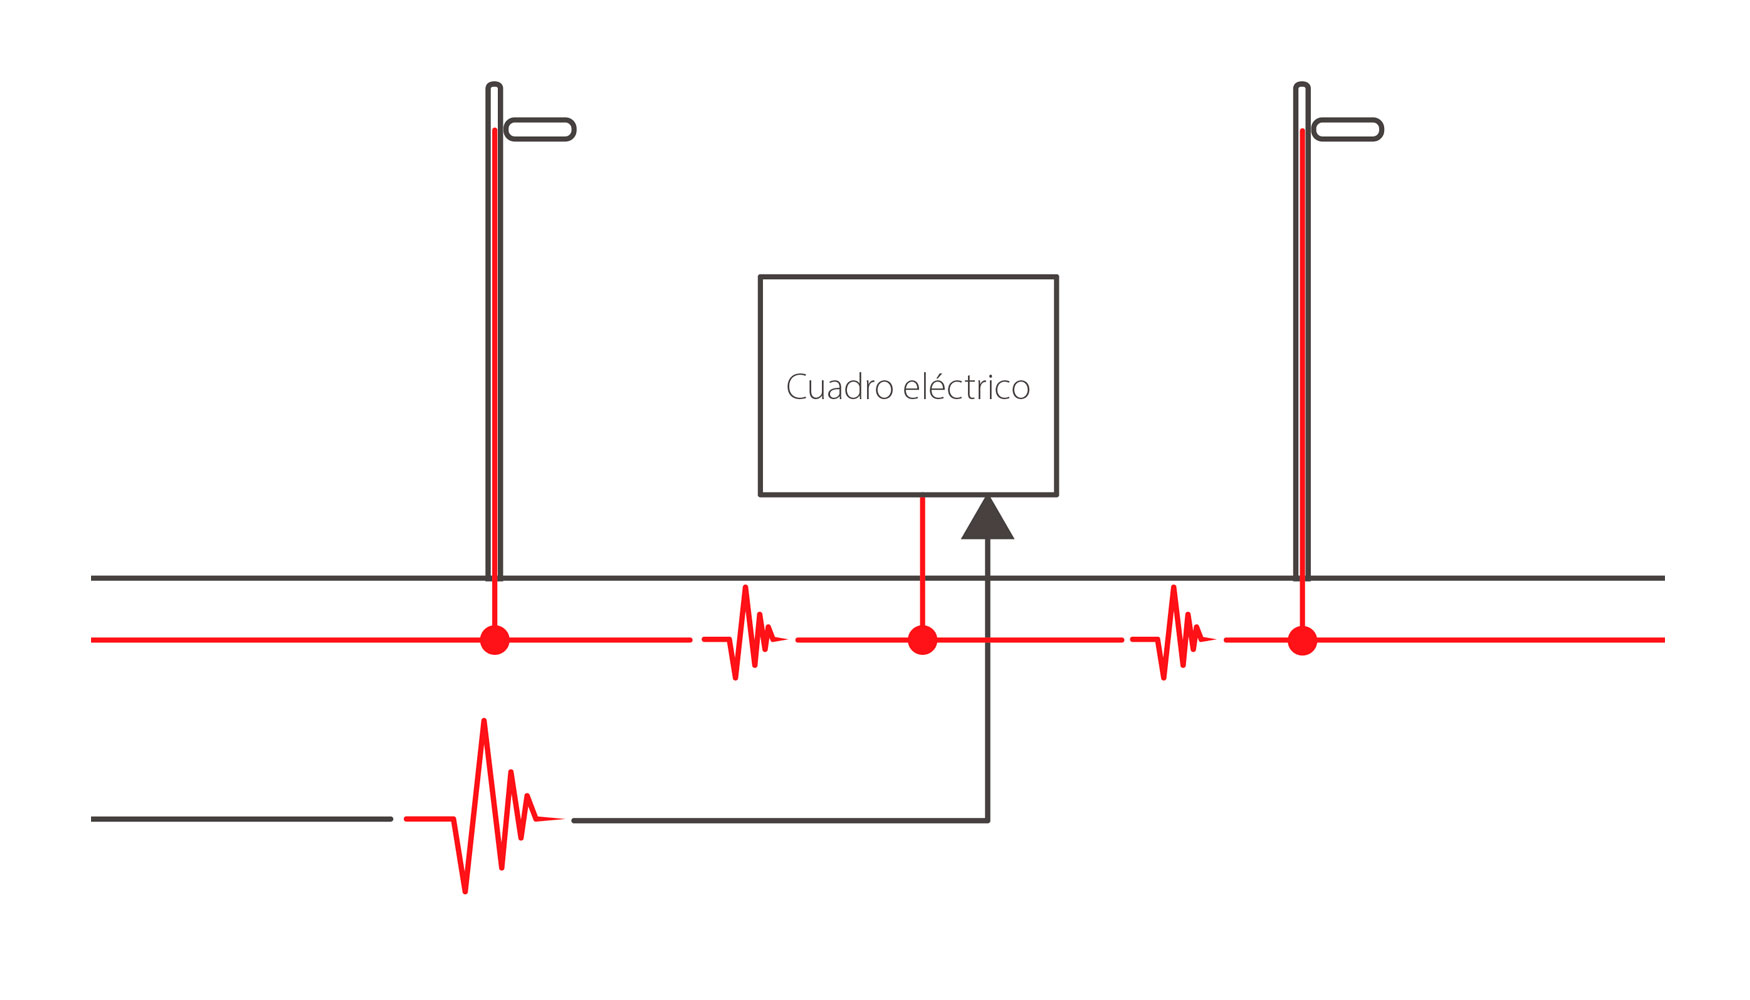 Grfico I: Perturbaciones por maniobras en la red elctrica